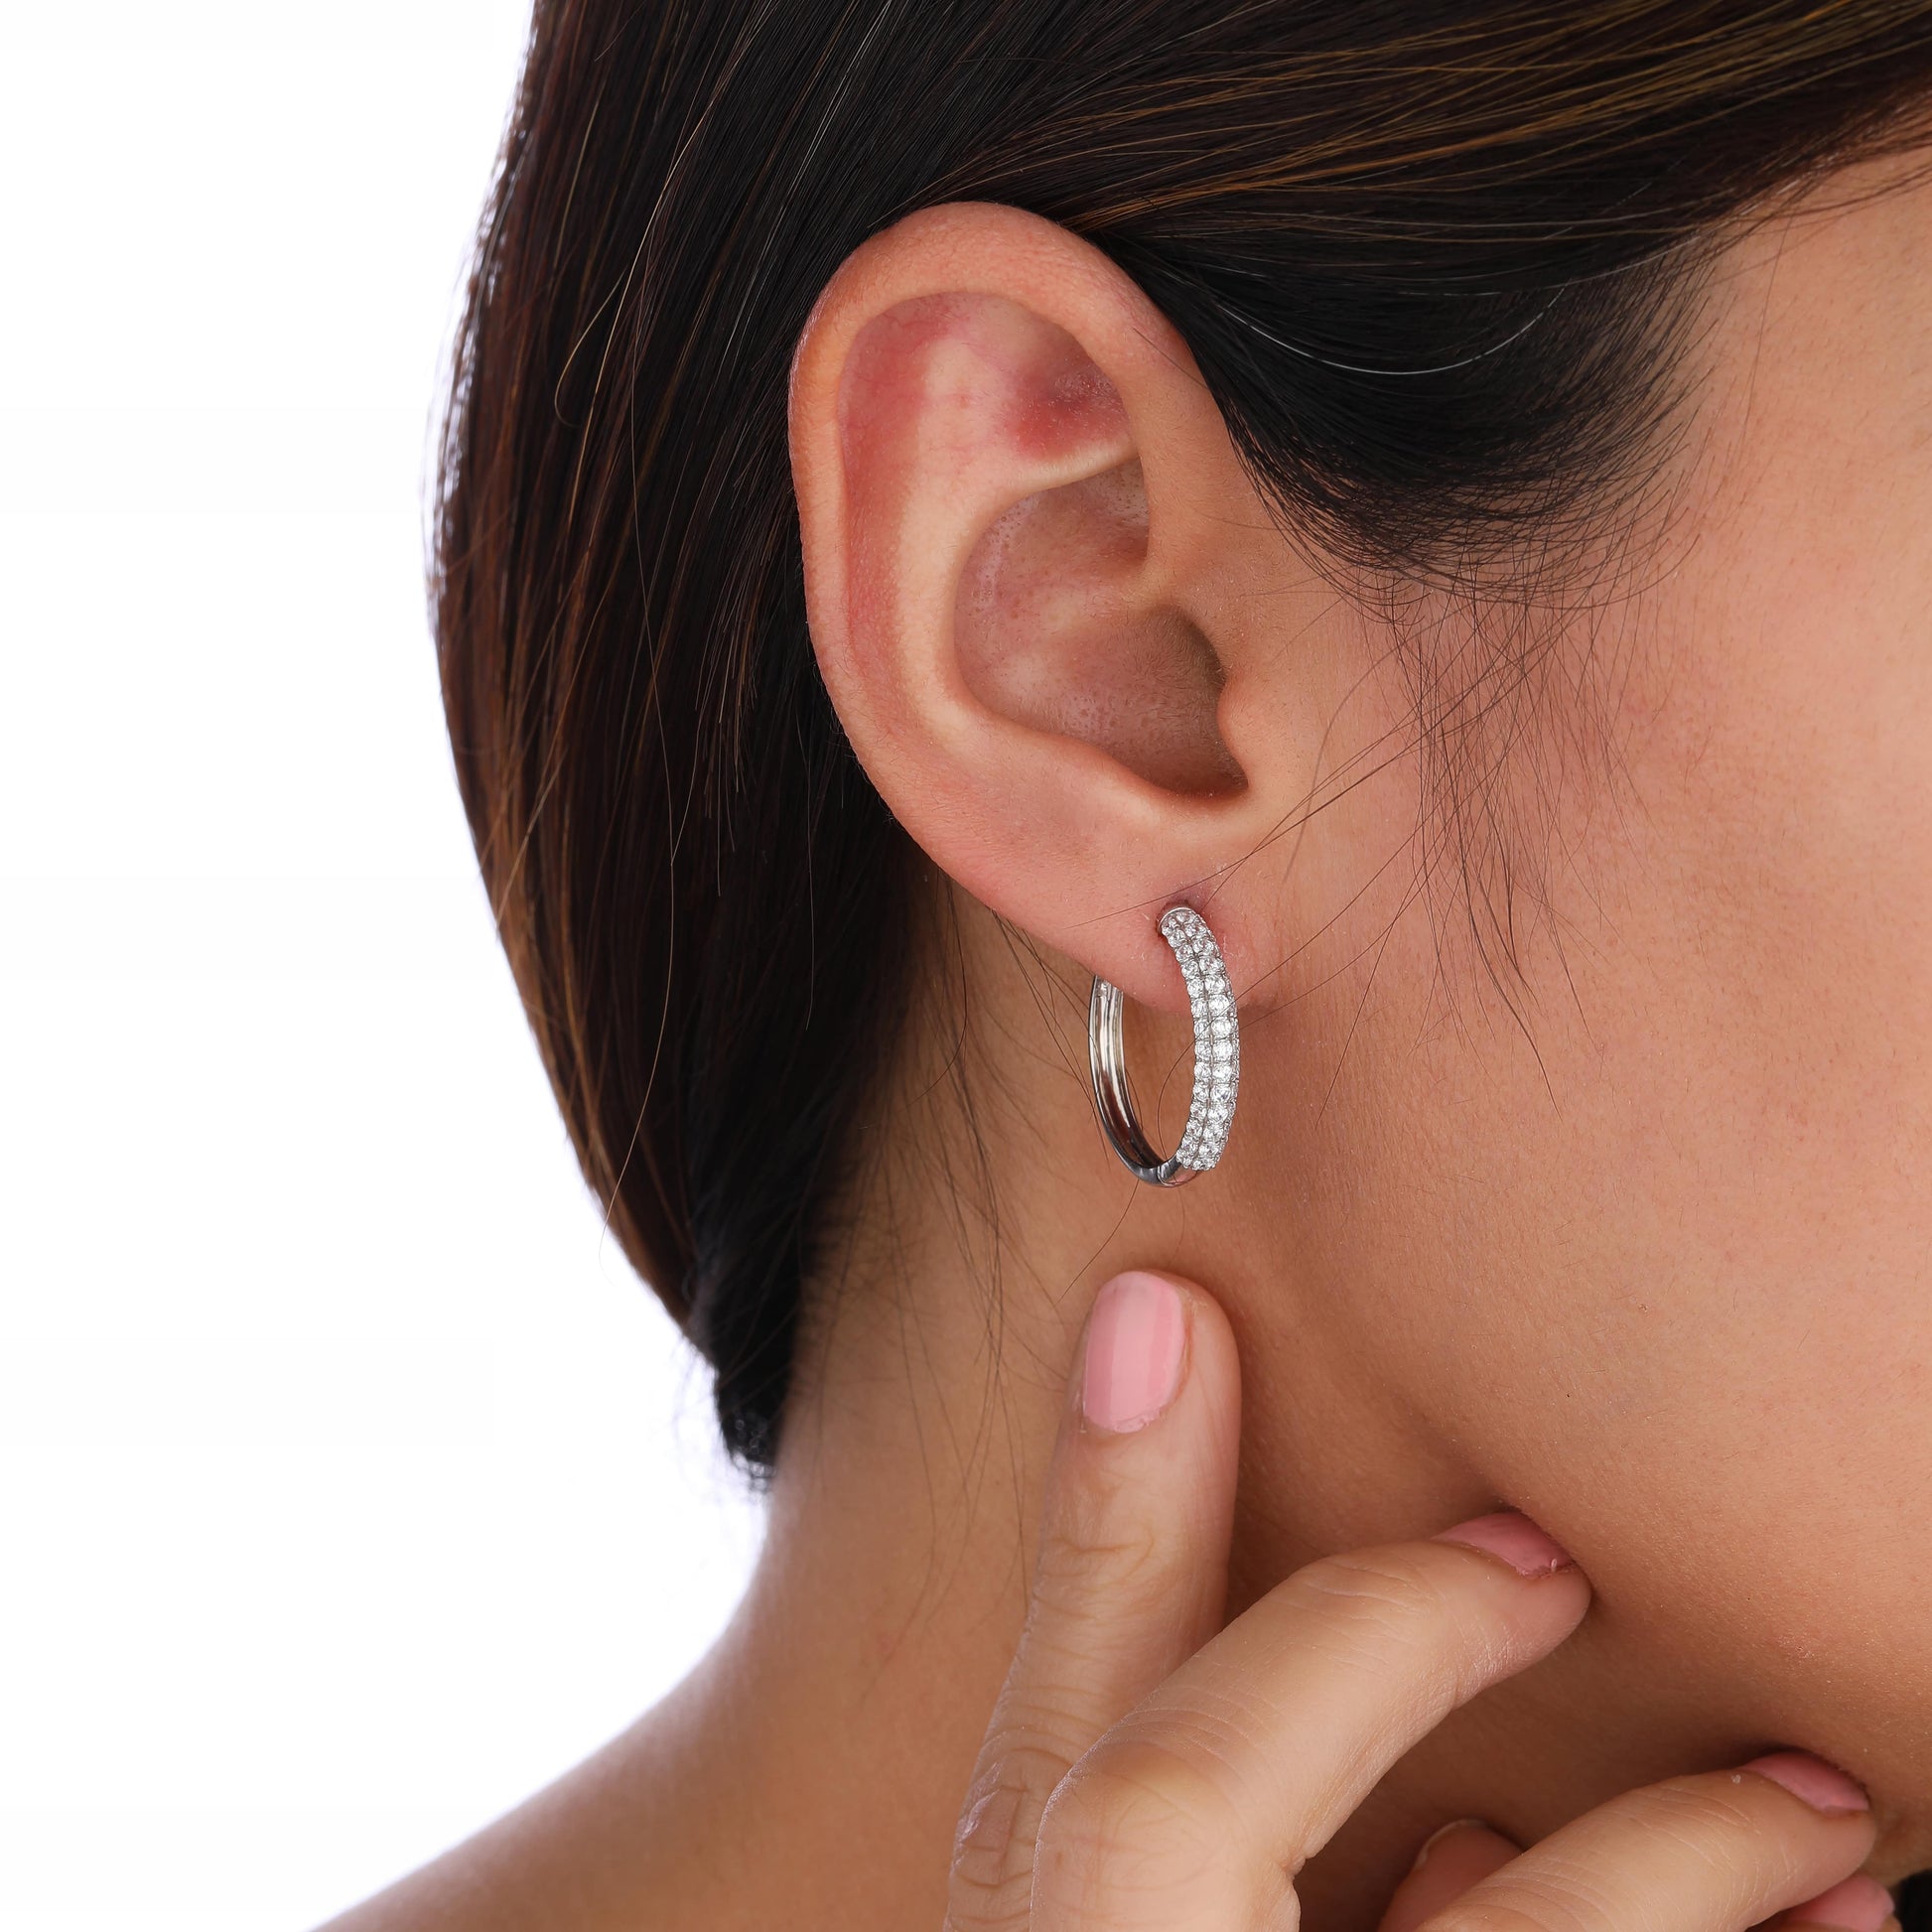 hoop earring in ear